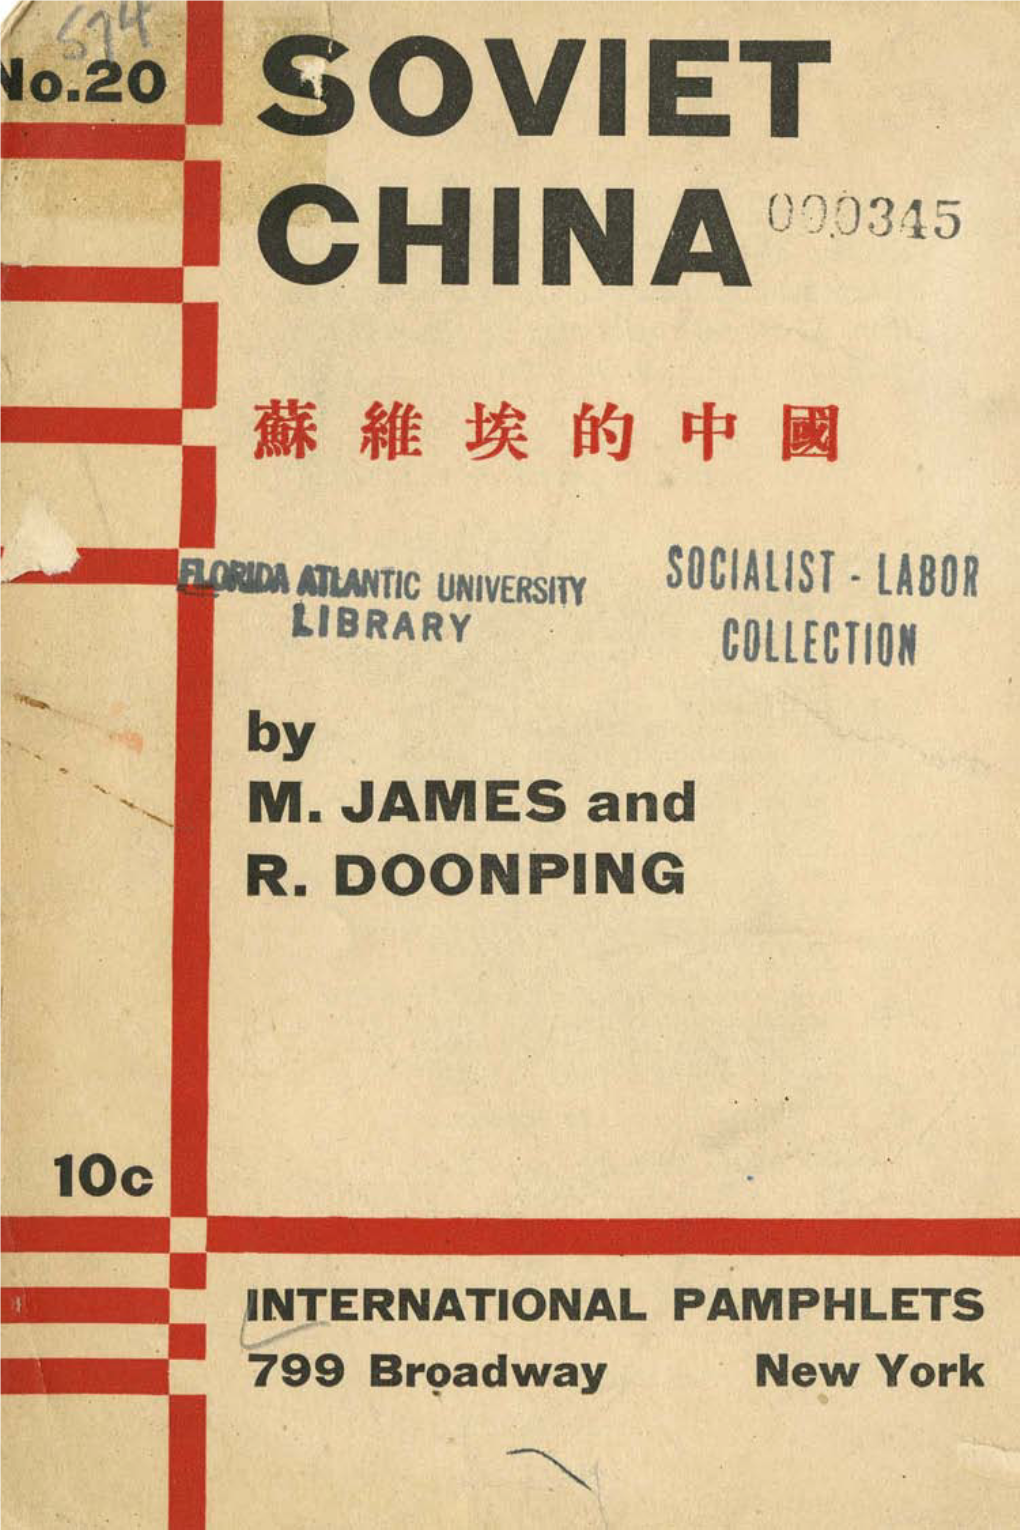 Soviet China090315